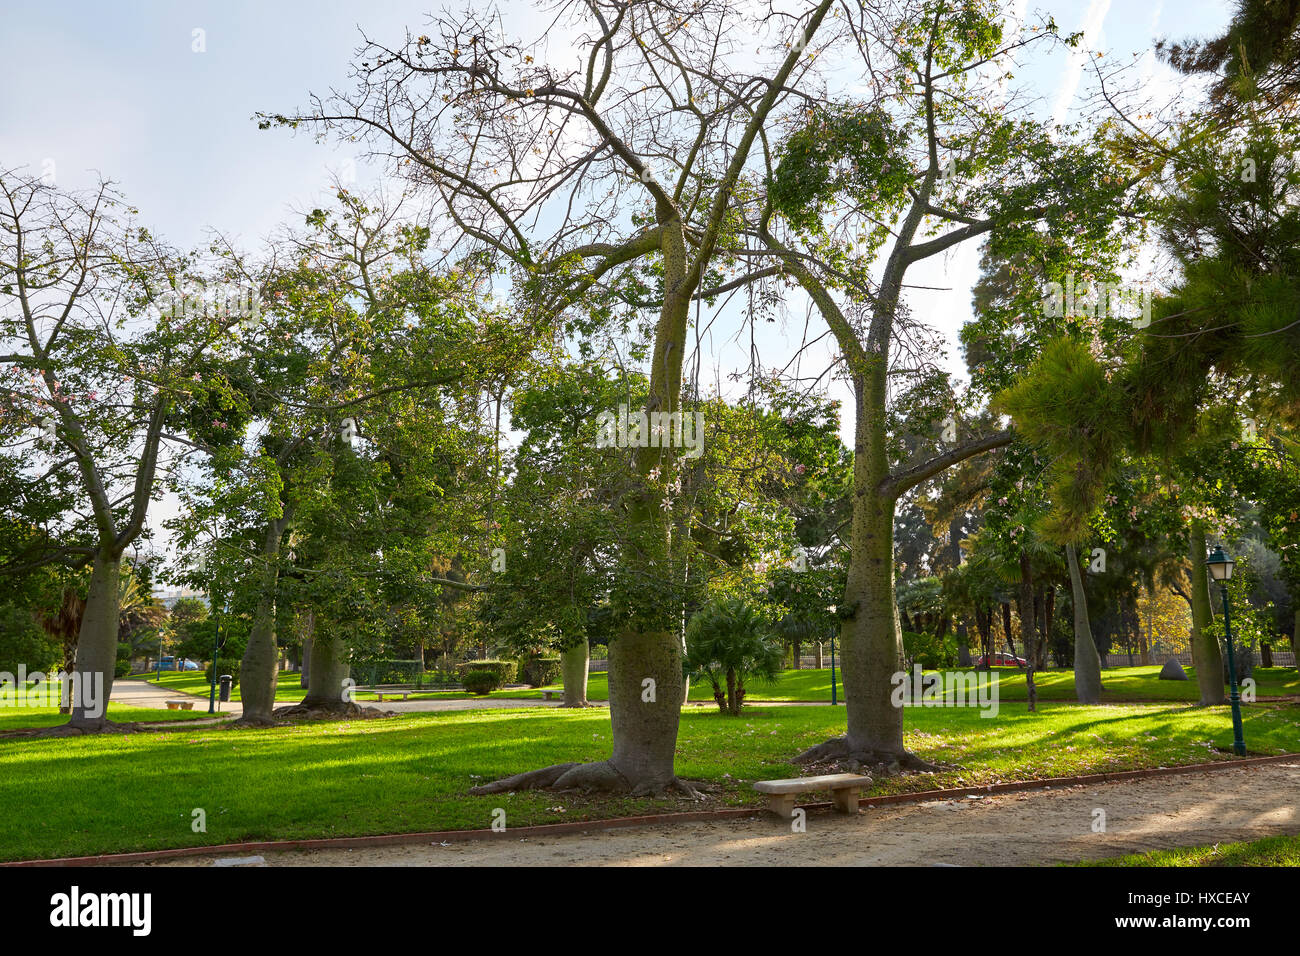 Ceiba trees in Turia river park of Valencia at Spain Stock Photo